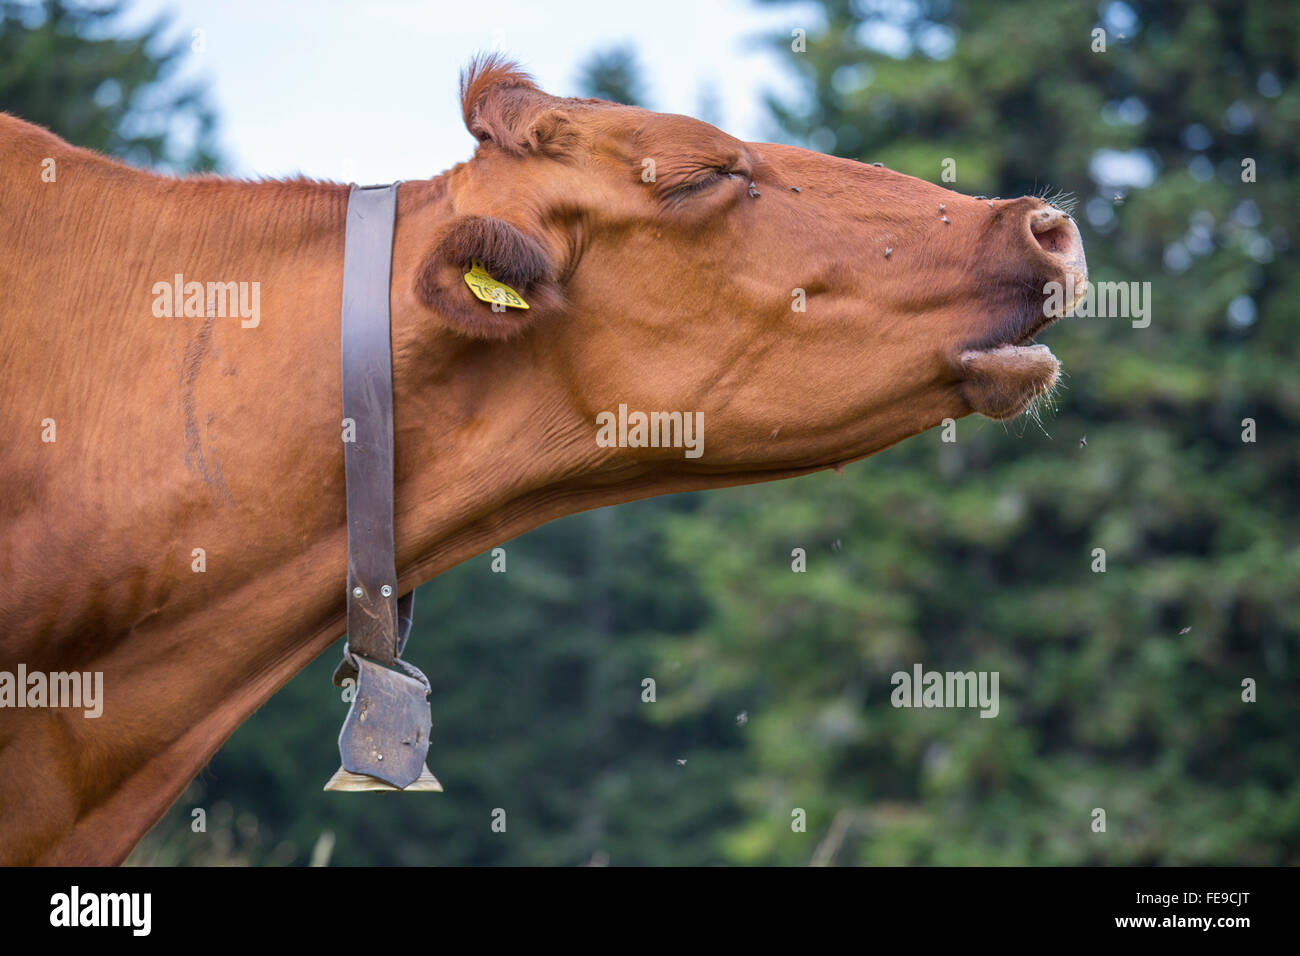 Una vaca marrón con una campana alrededor del cuello mientras mooing Foto de stock